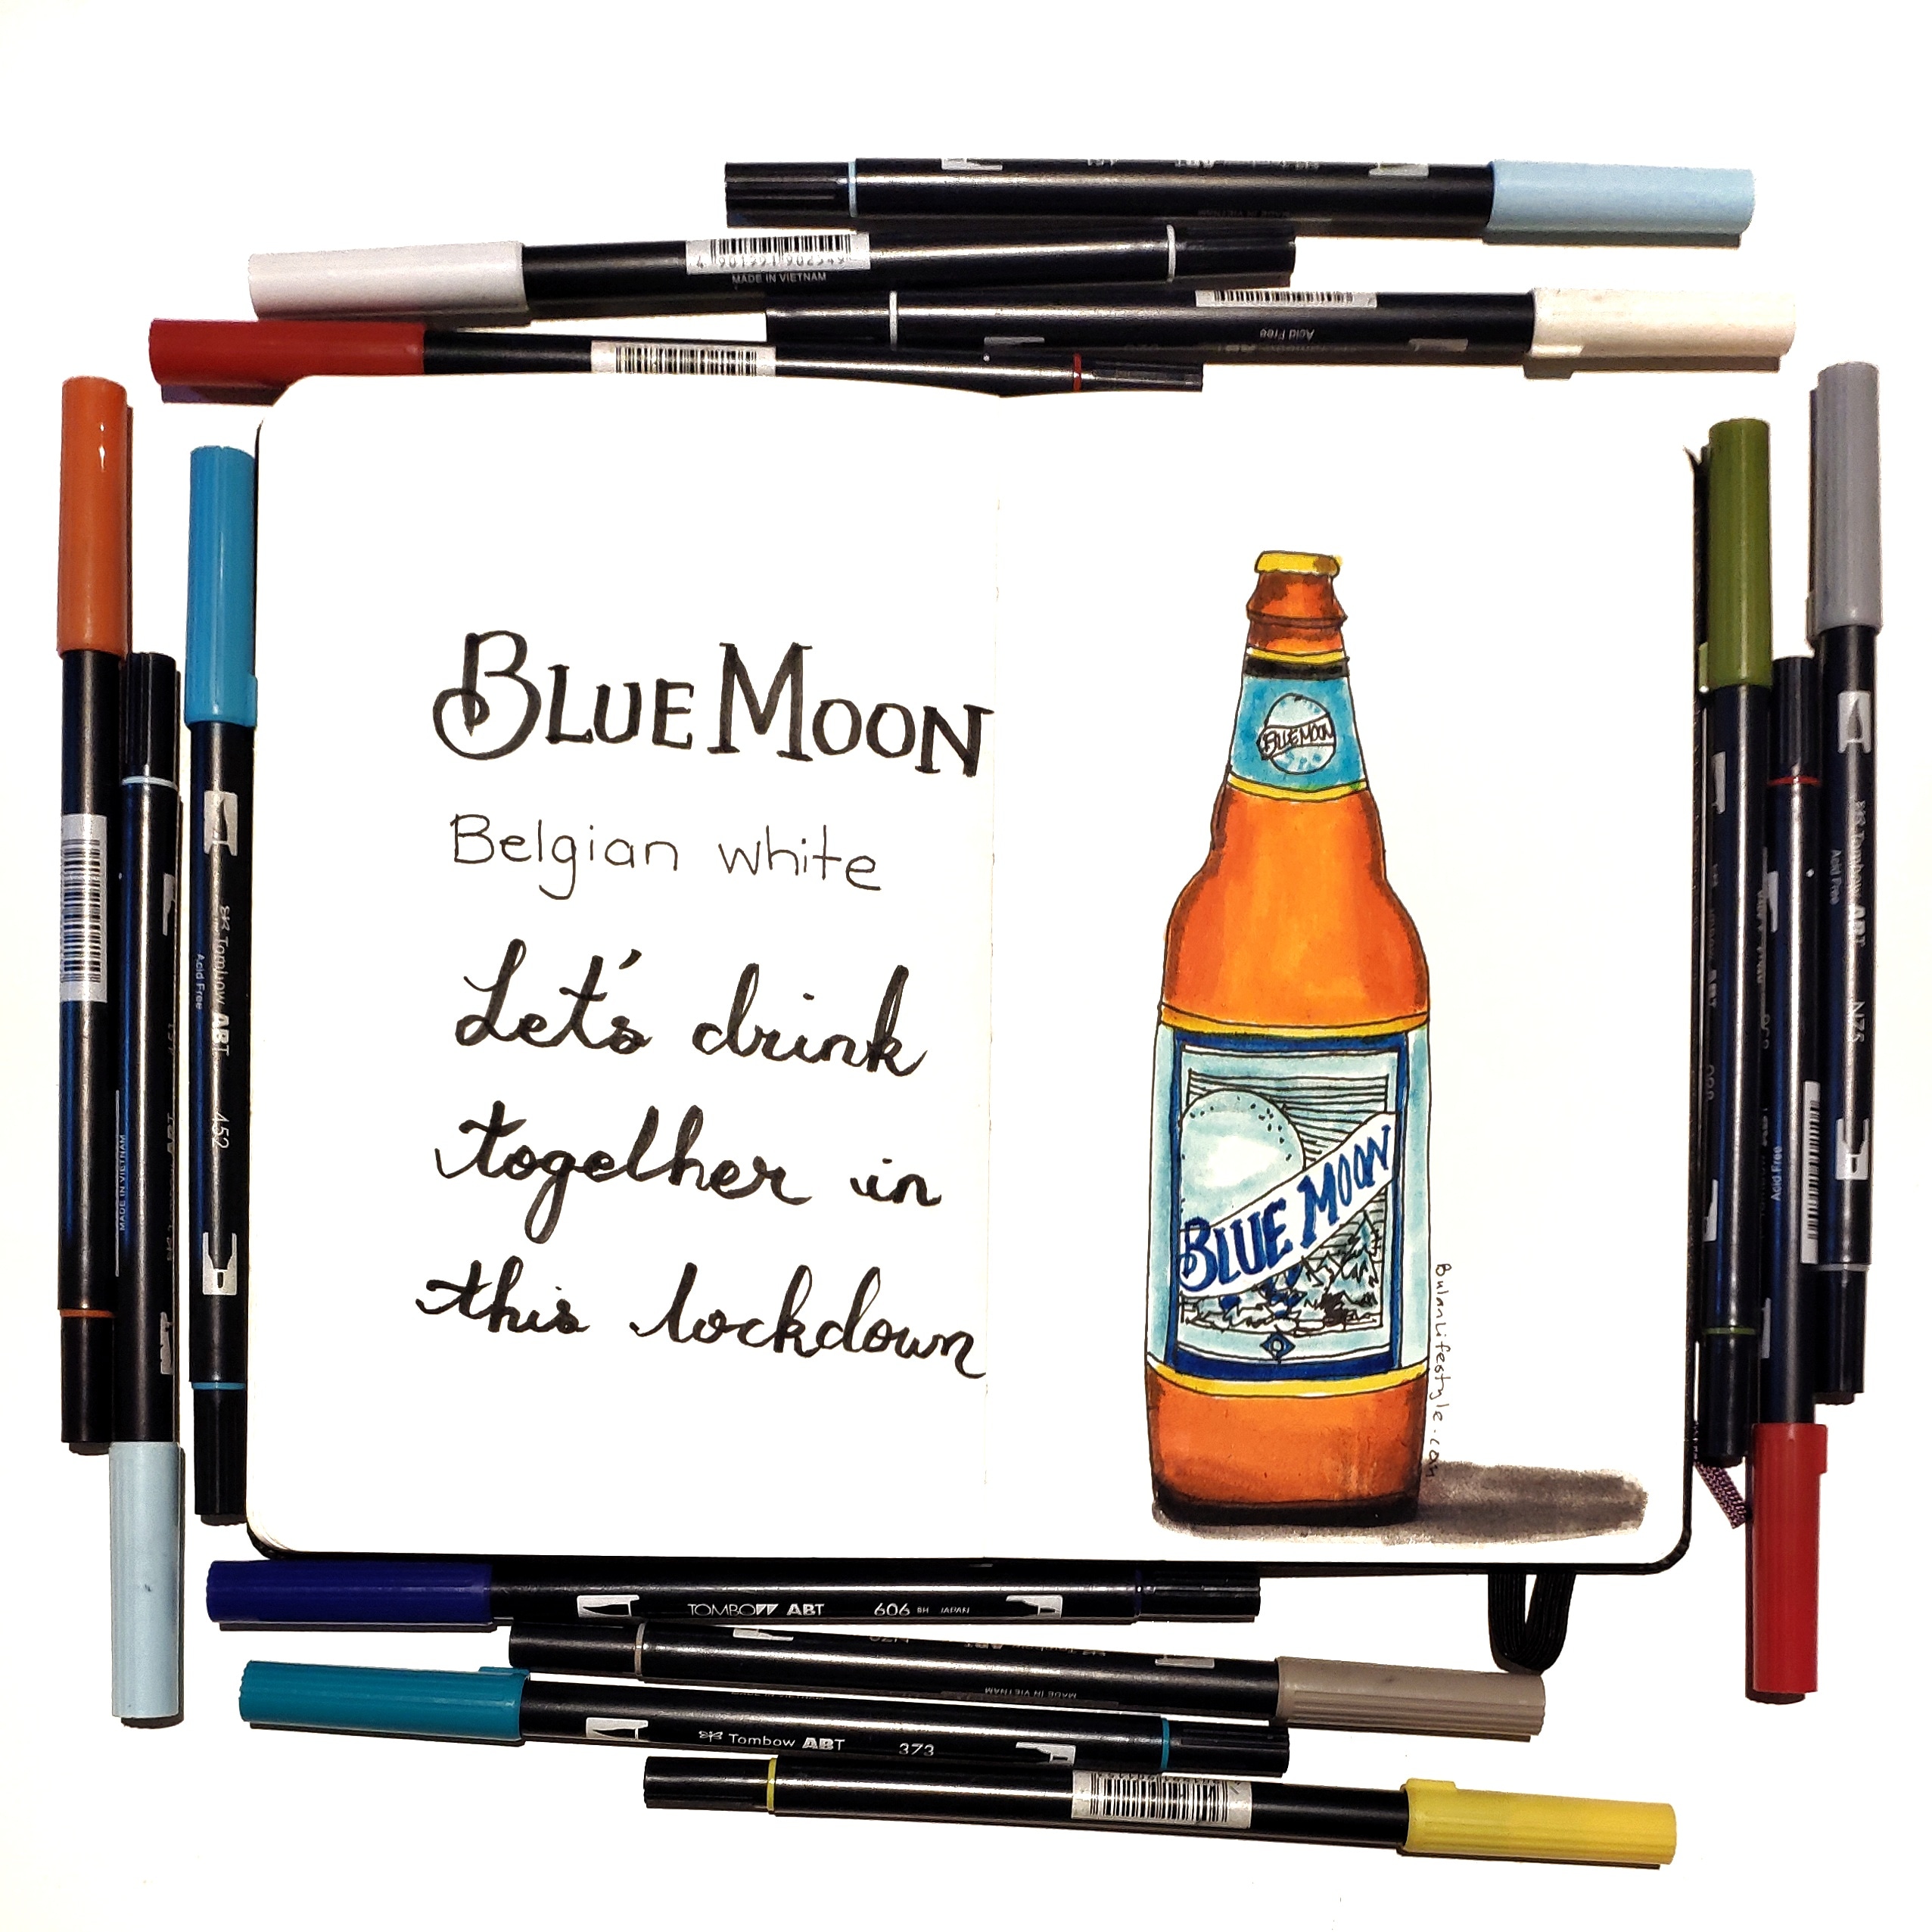 Blue moon beer